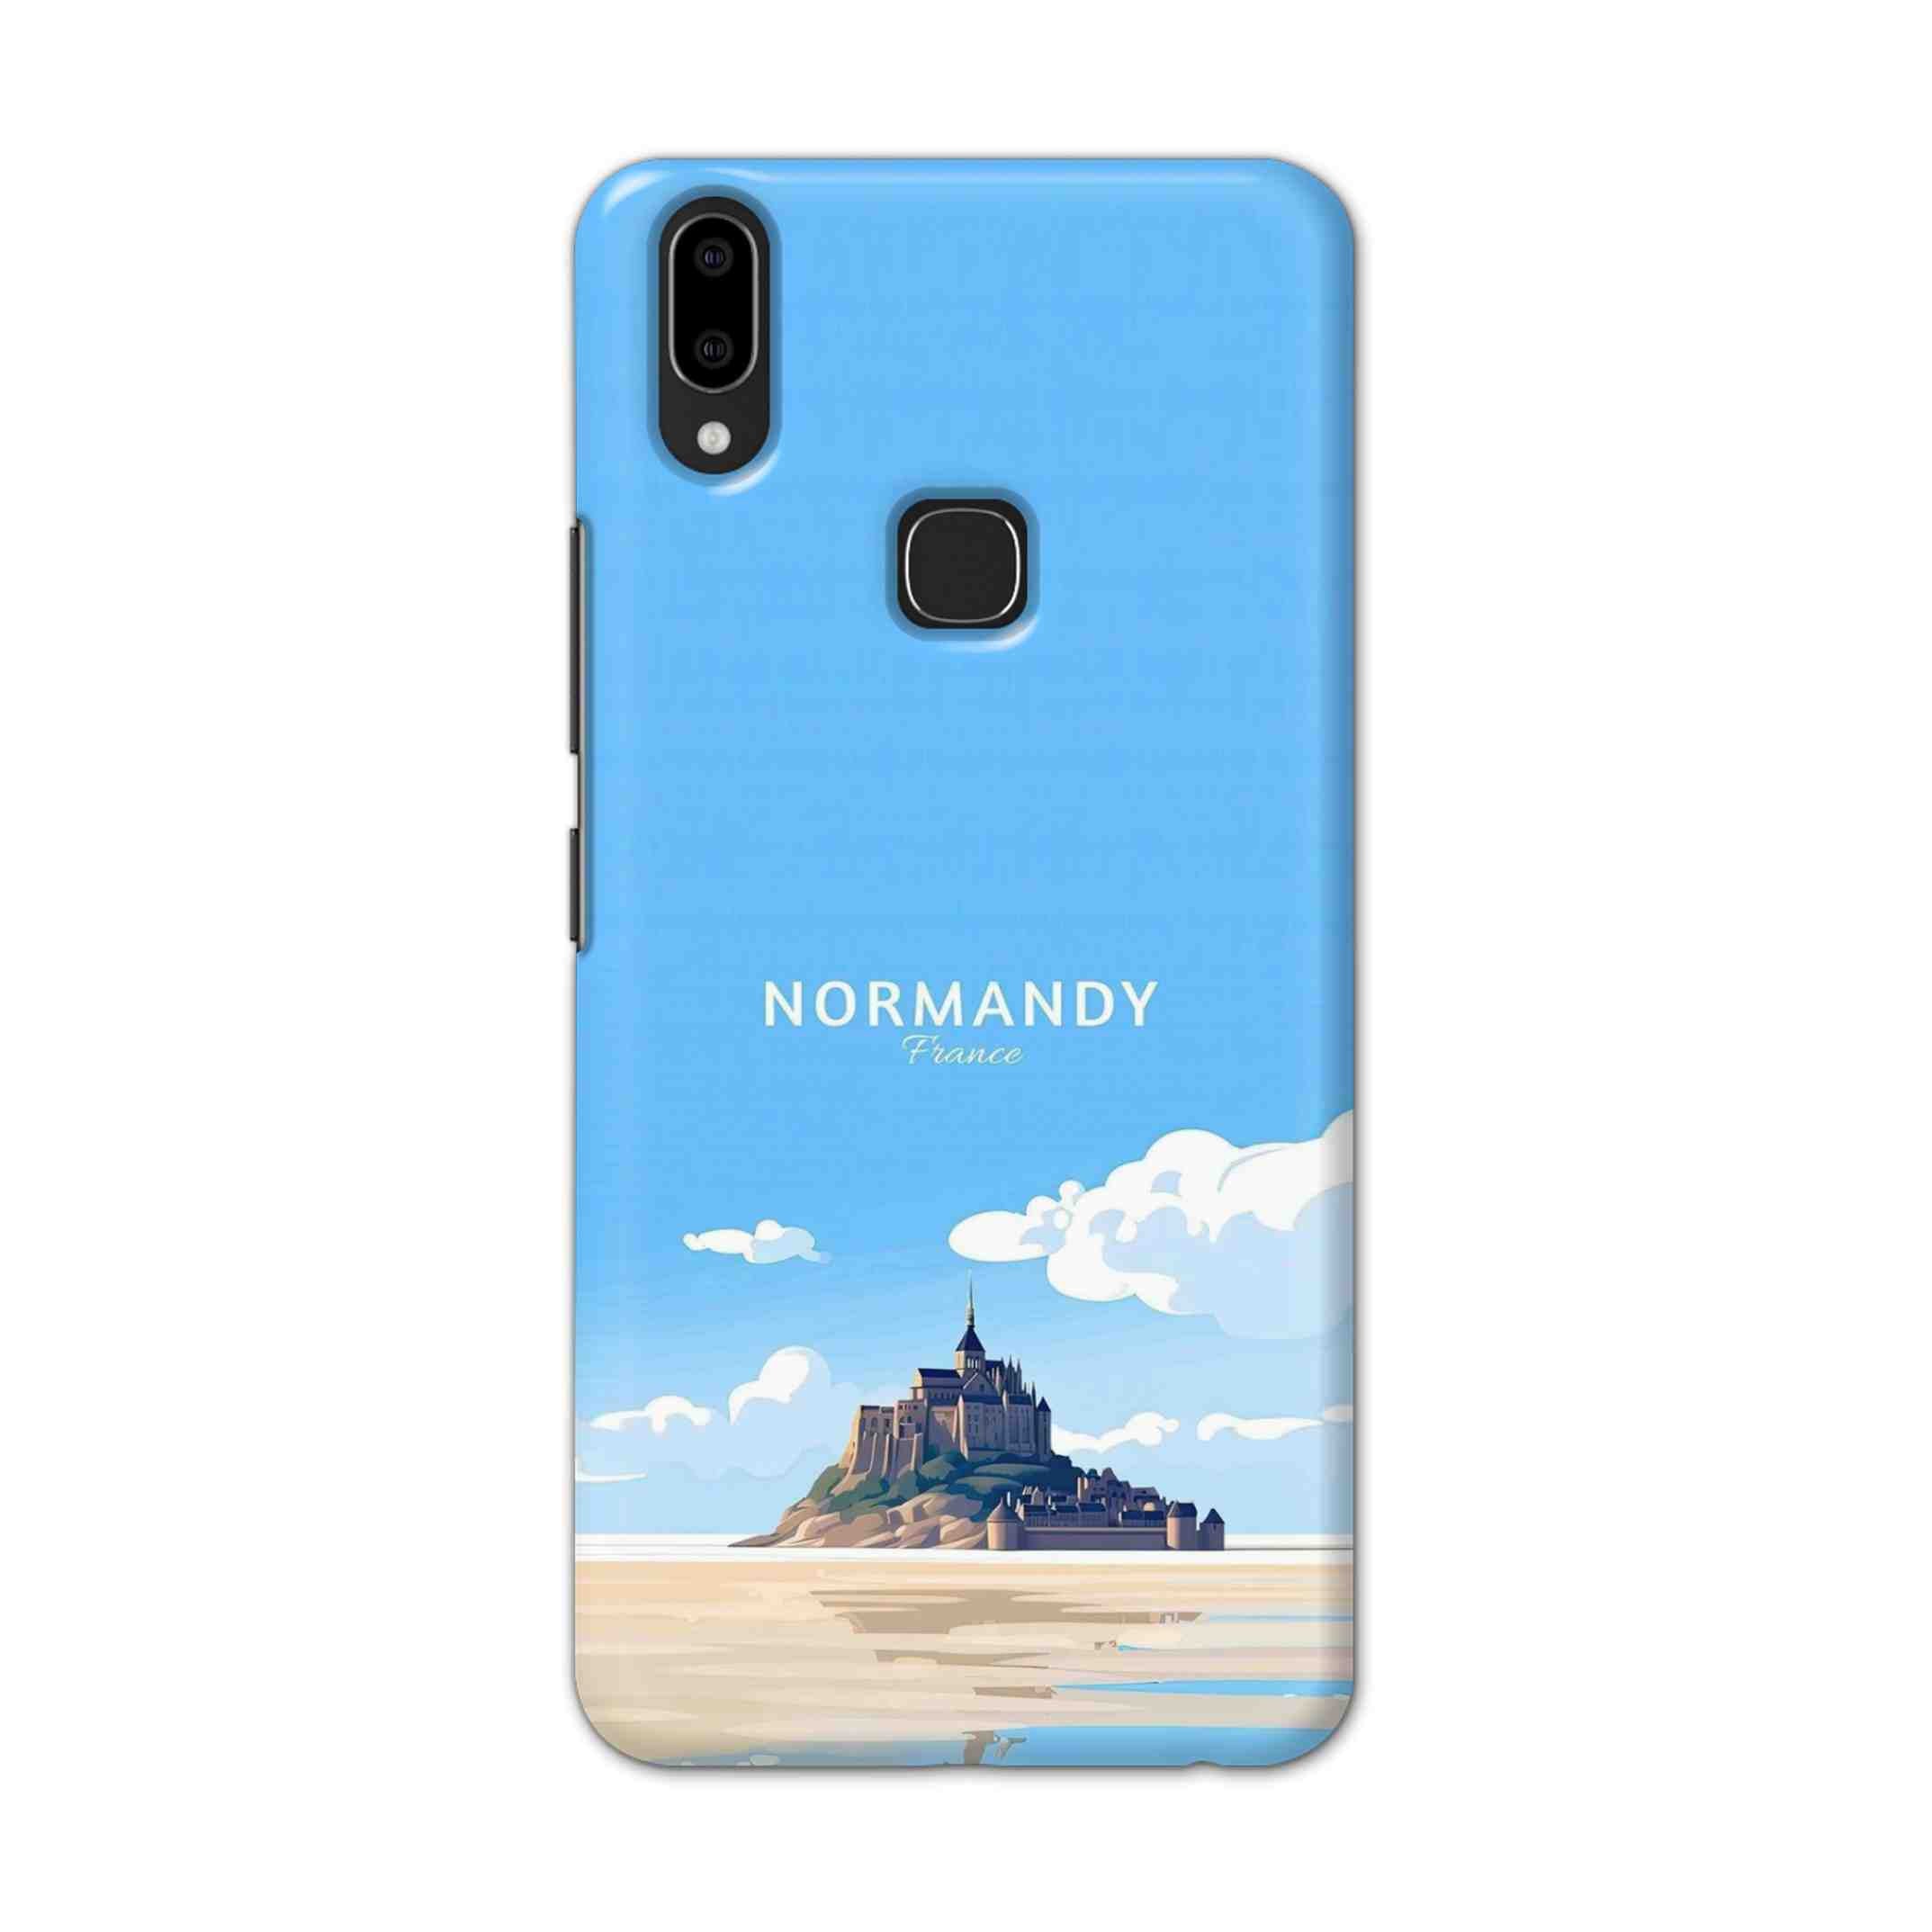 Buy Normandy Hard Back Mobile Phone Case Cover For Vivo V9 / V9 Youth Online